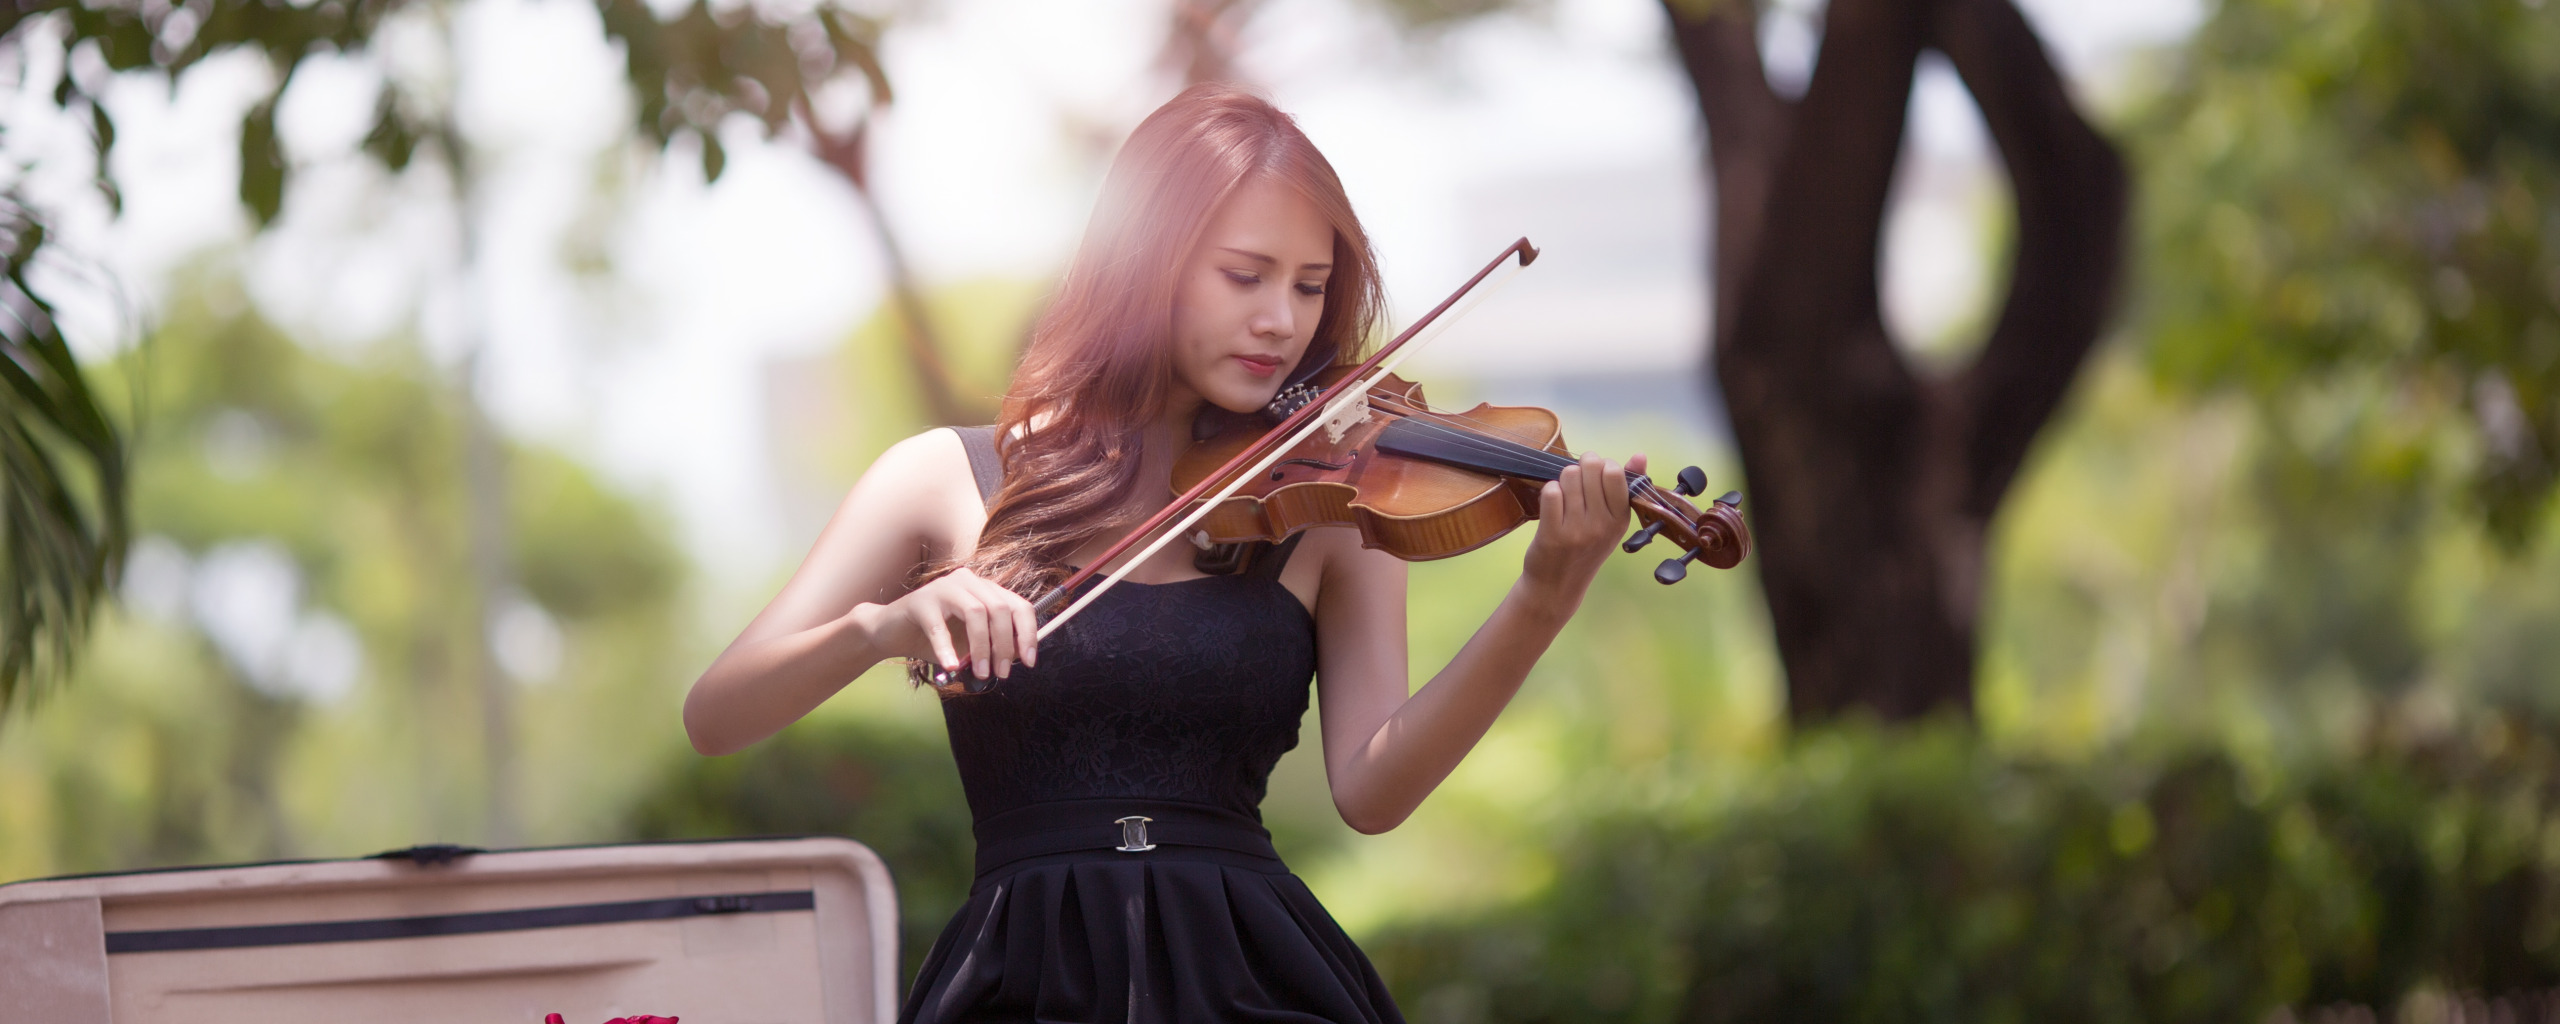 Девушка в платье со скрипкой. Платья для скрипачей. Козлов скрипка. Лучшая инструментальная музыка в современной обработке